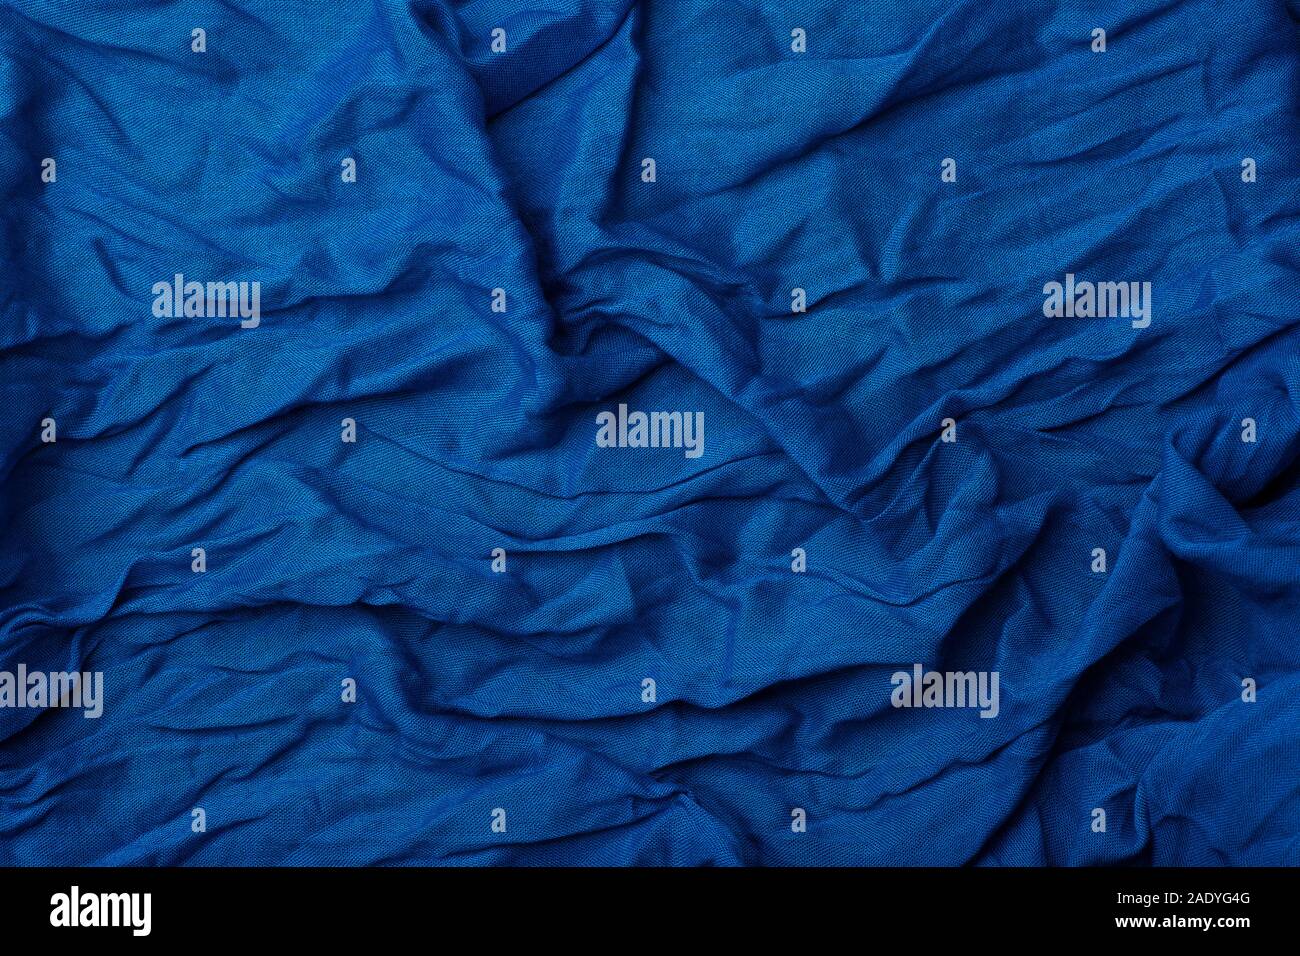 Colore dell'anno 2020 Pantone Classic Blue sfondo Foto Stock